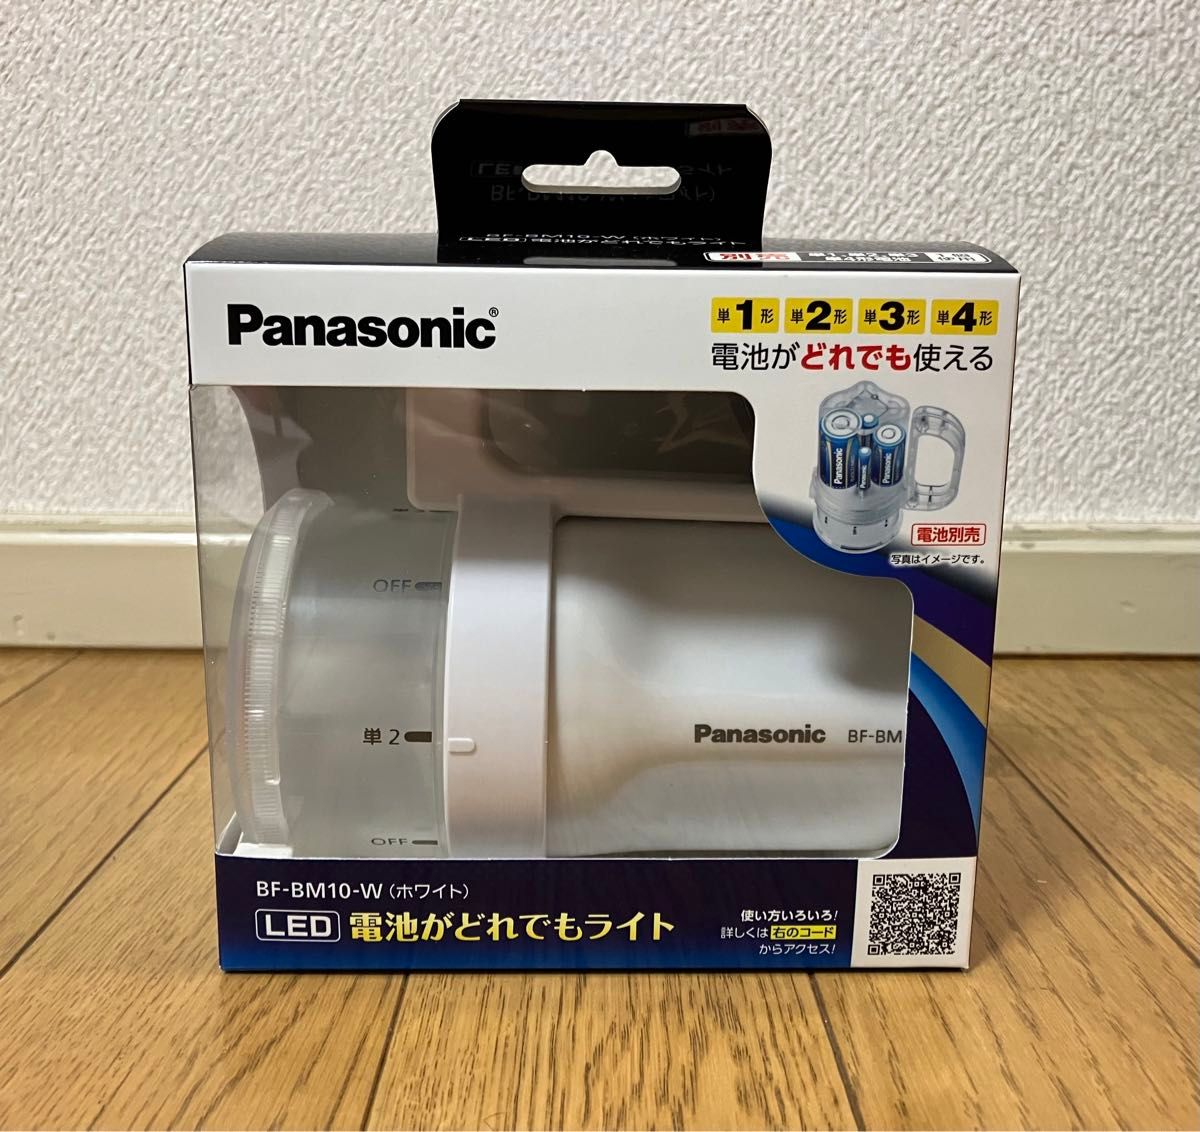 【ほぼ未使用】Panasonic BF-BM10-W ★電池がどれでもライト ★防災グッズ